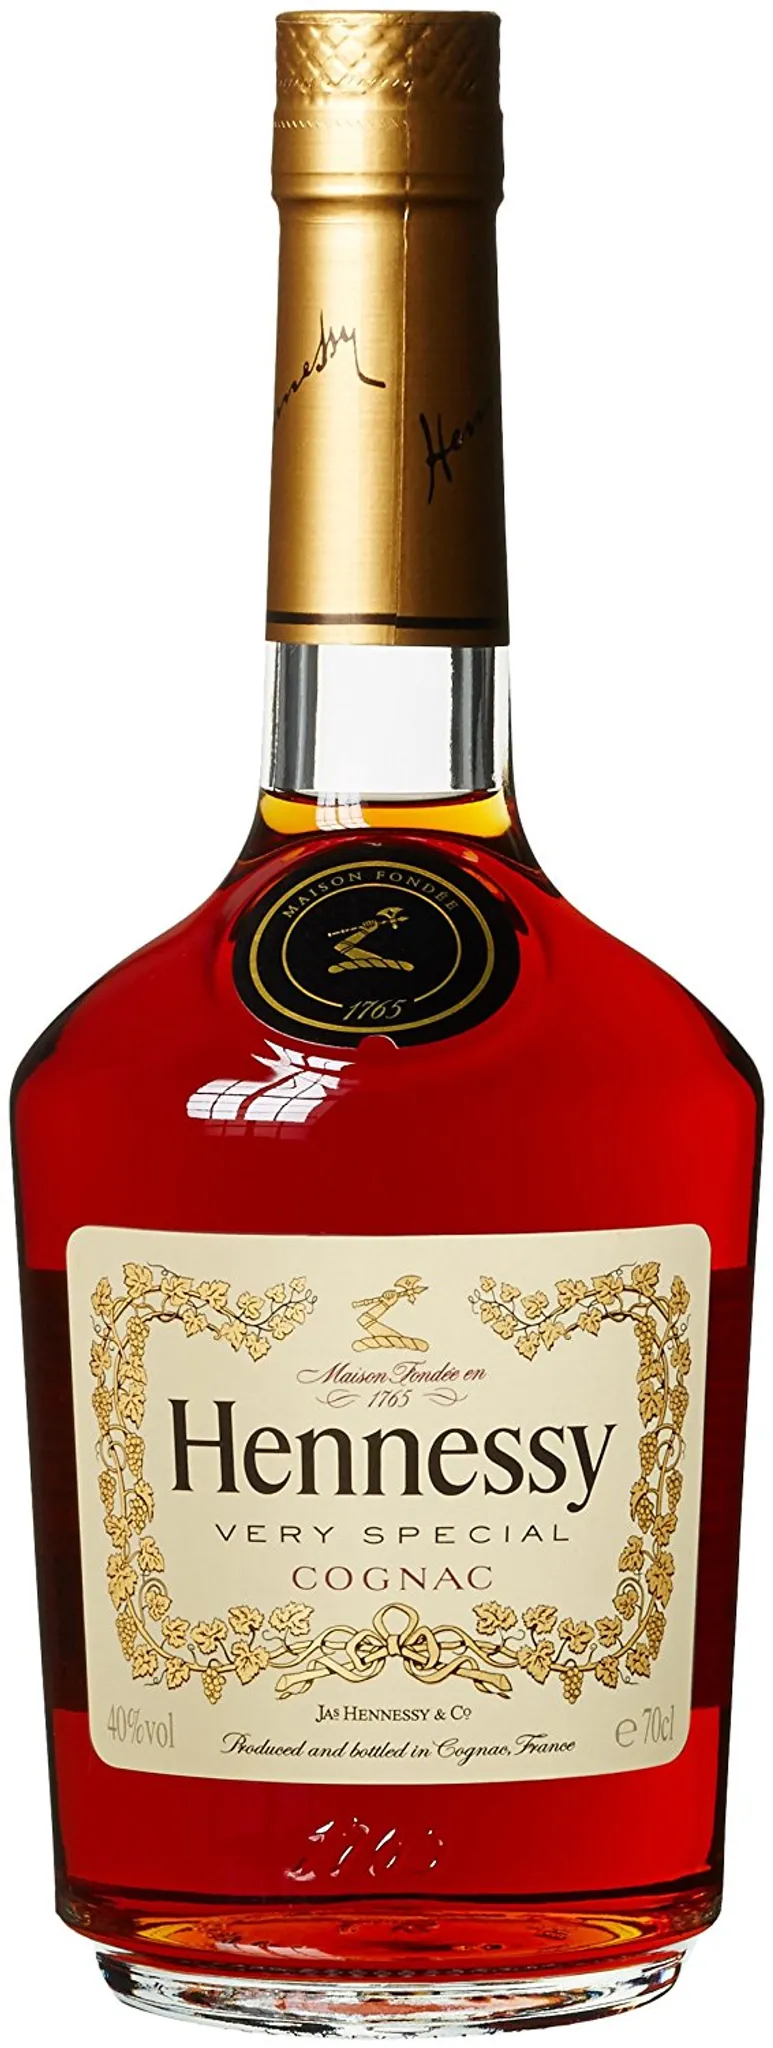 Very VS Special vol | Cognac % 40 Hennessy